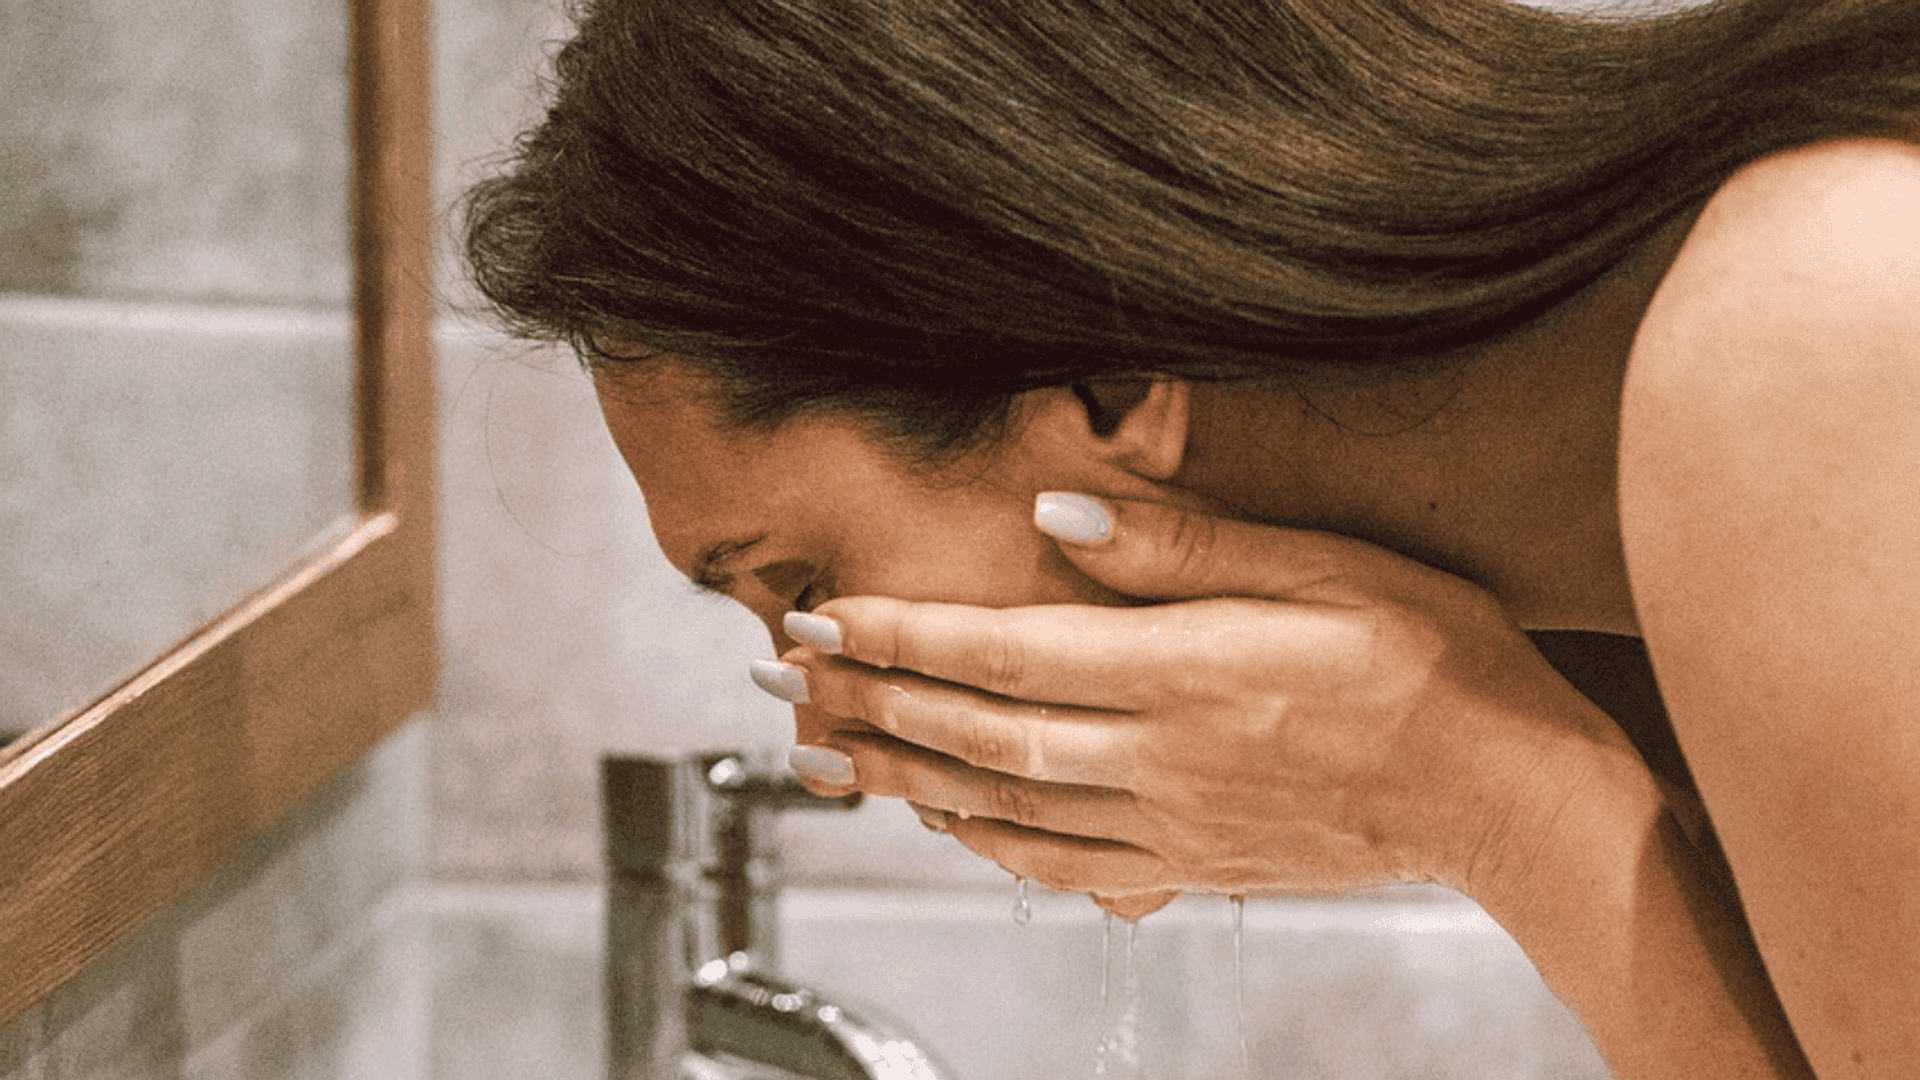 Kobieta myje twarz